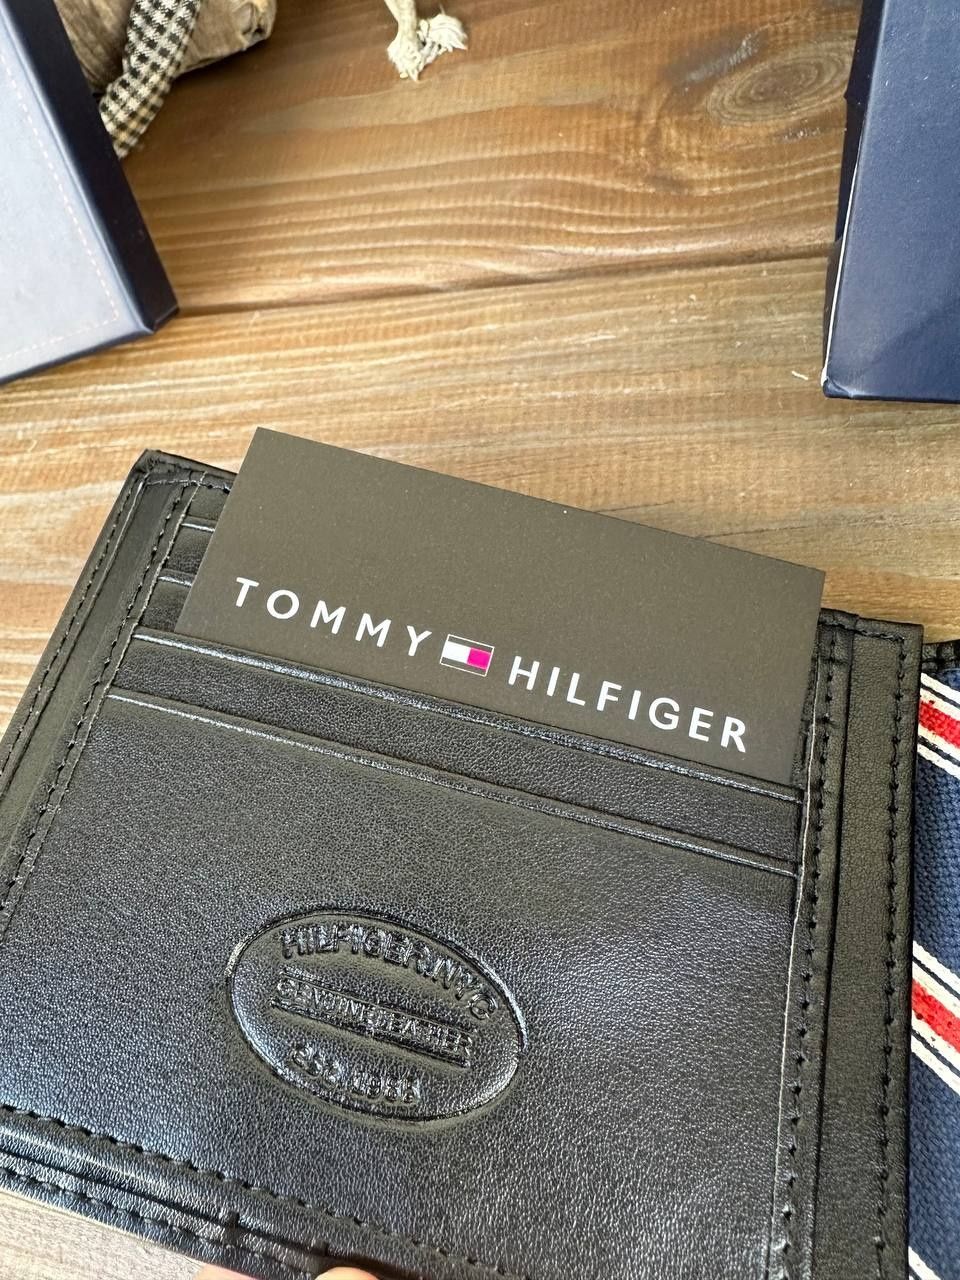 Гаманець Tommy Hilfiger

Матеріал : Шкіра

Йде в комплекті з фірмовим